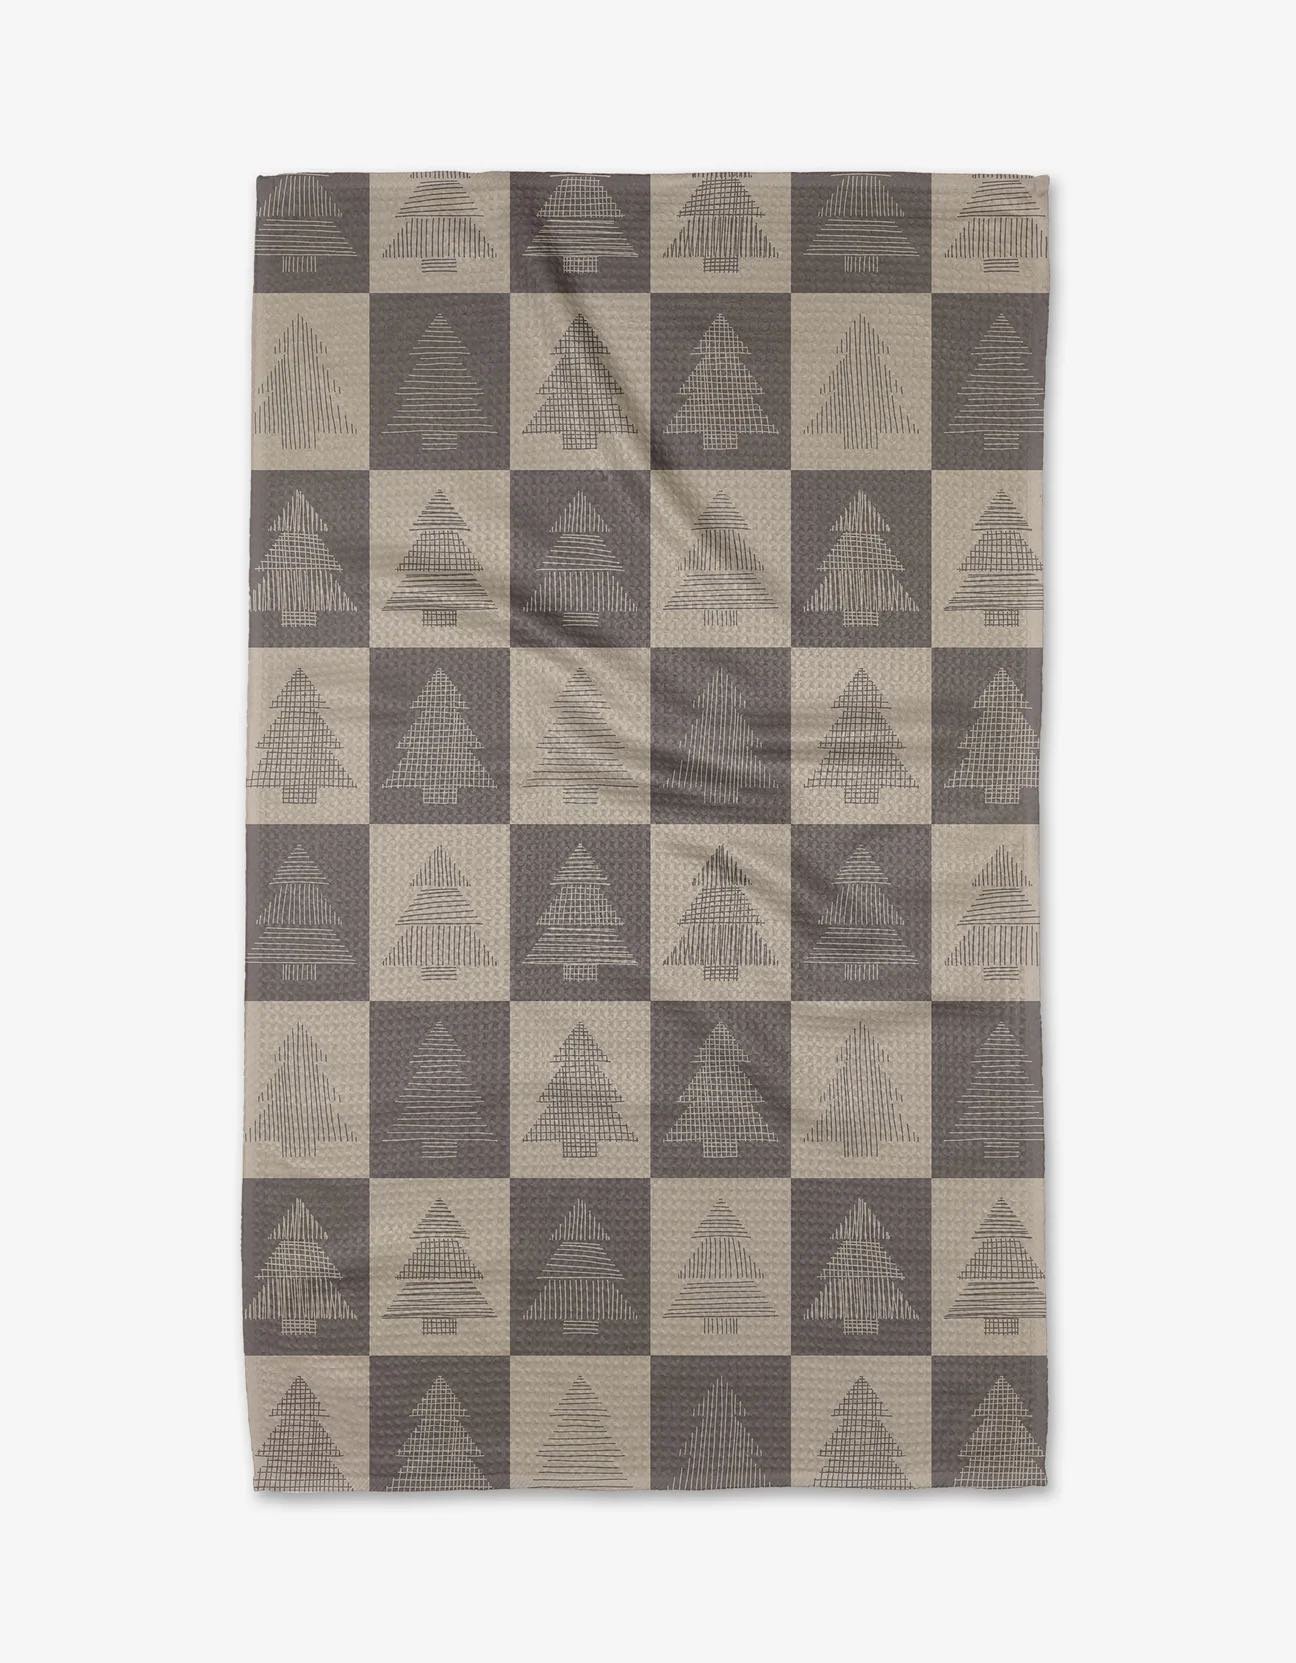 Geometry House Minimalist Christmas Tree Tea Towel